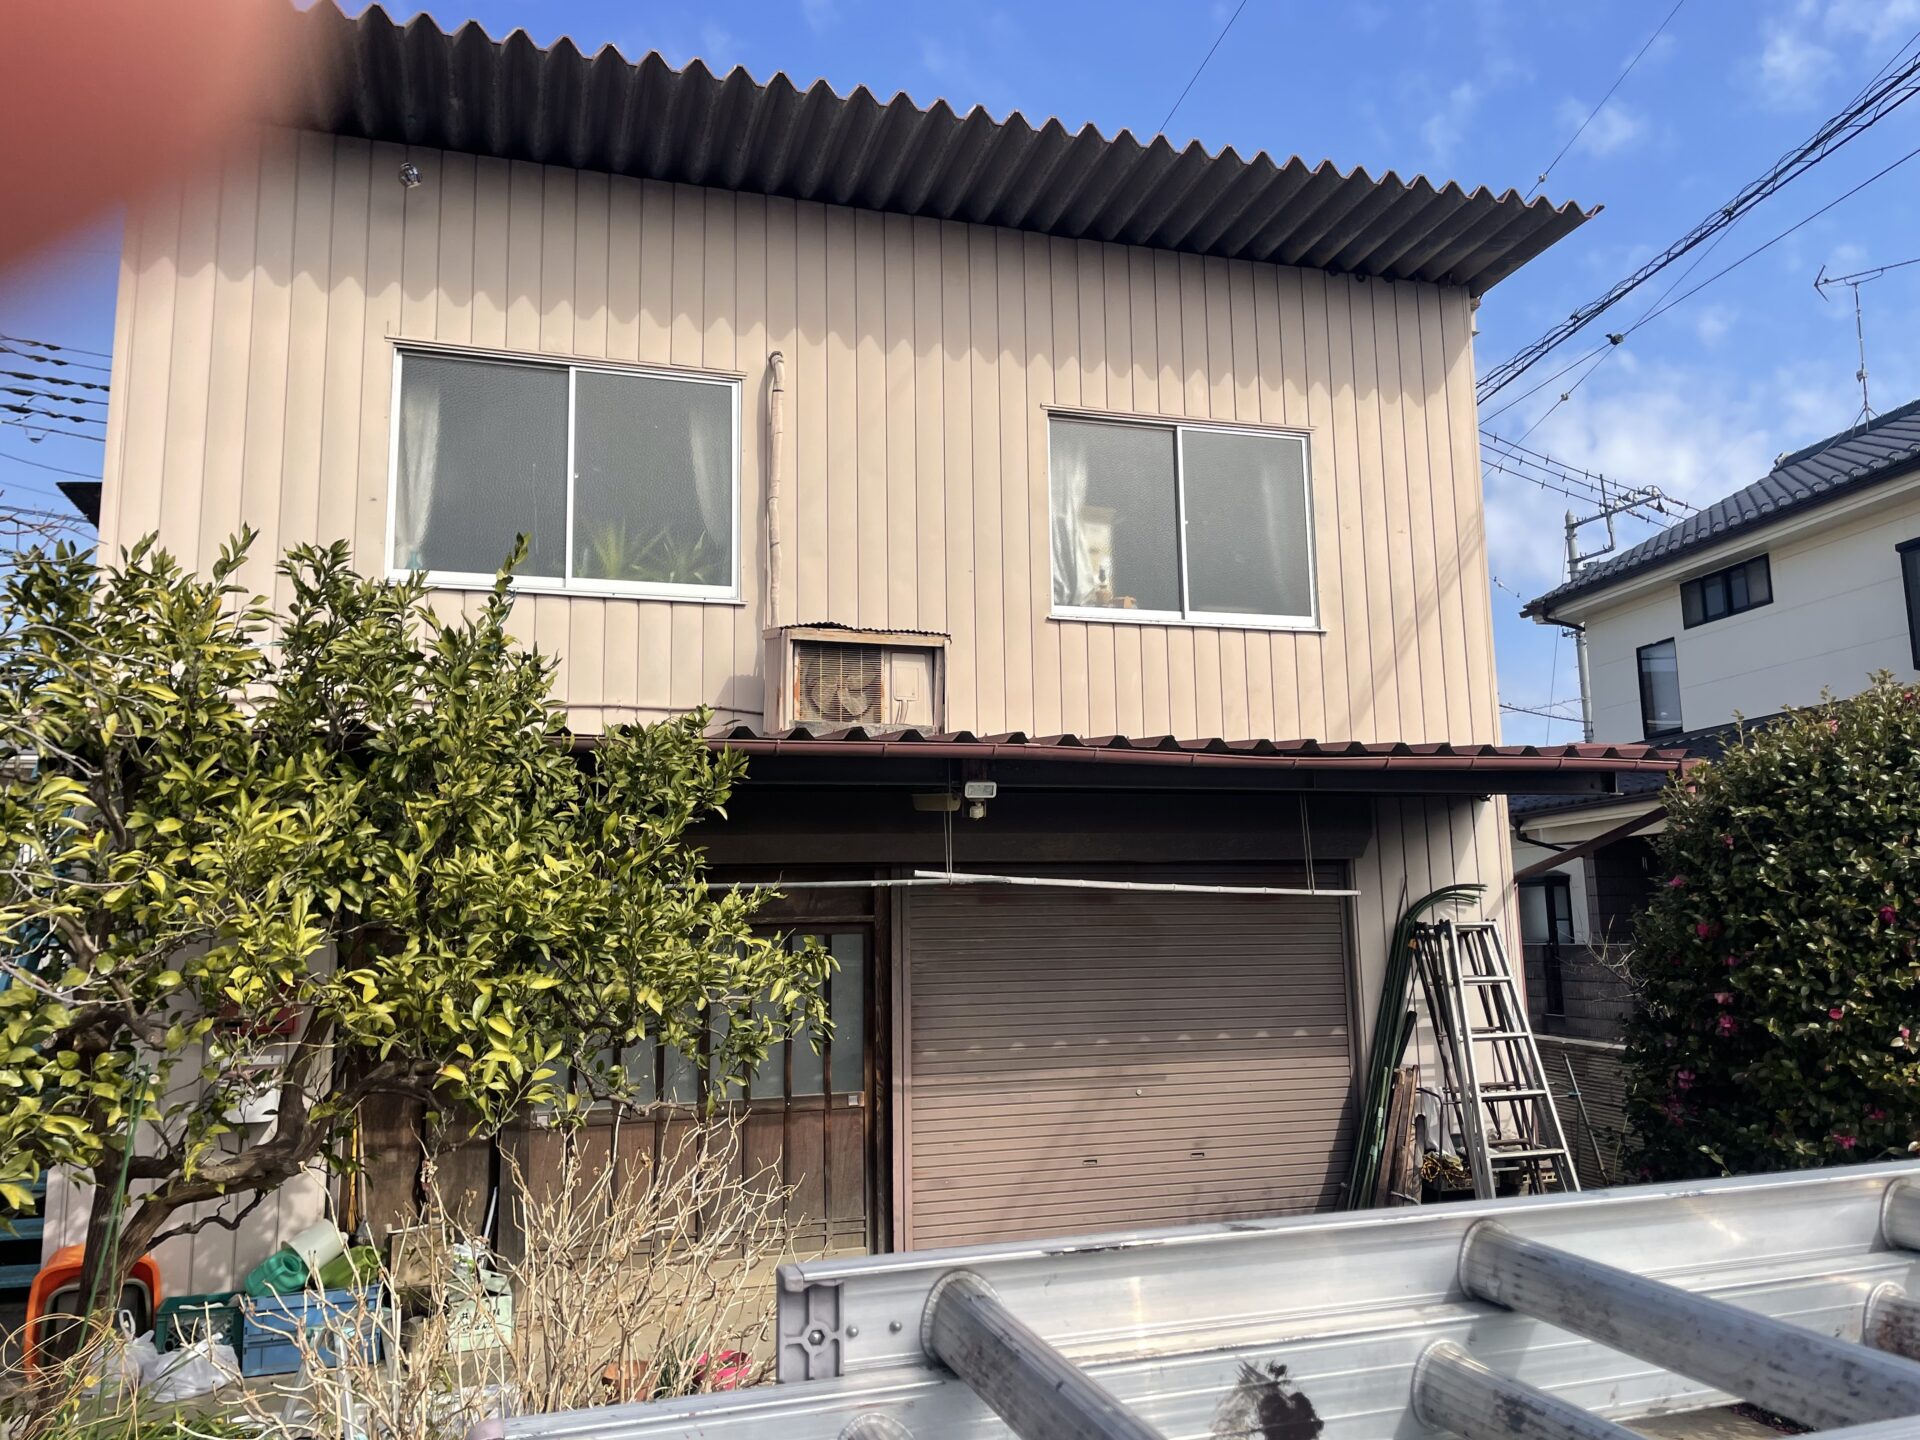 埼玉県川越市で母屋の外壁と倉庫をグレー色で統一して落ち着いた雰囲気のお家になりました。施工前